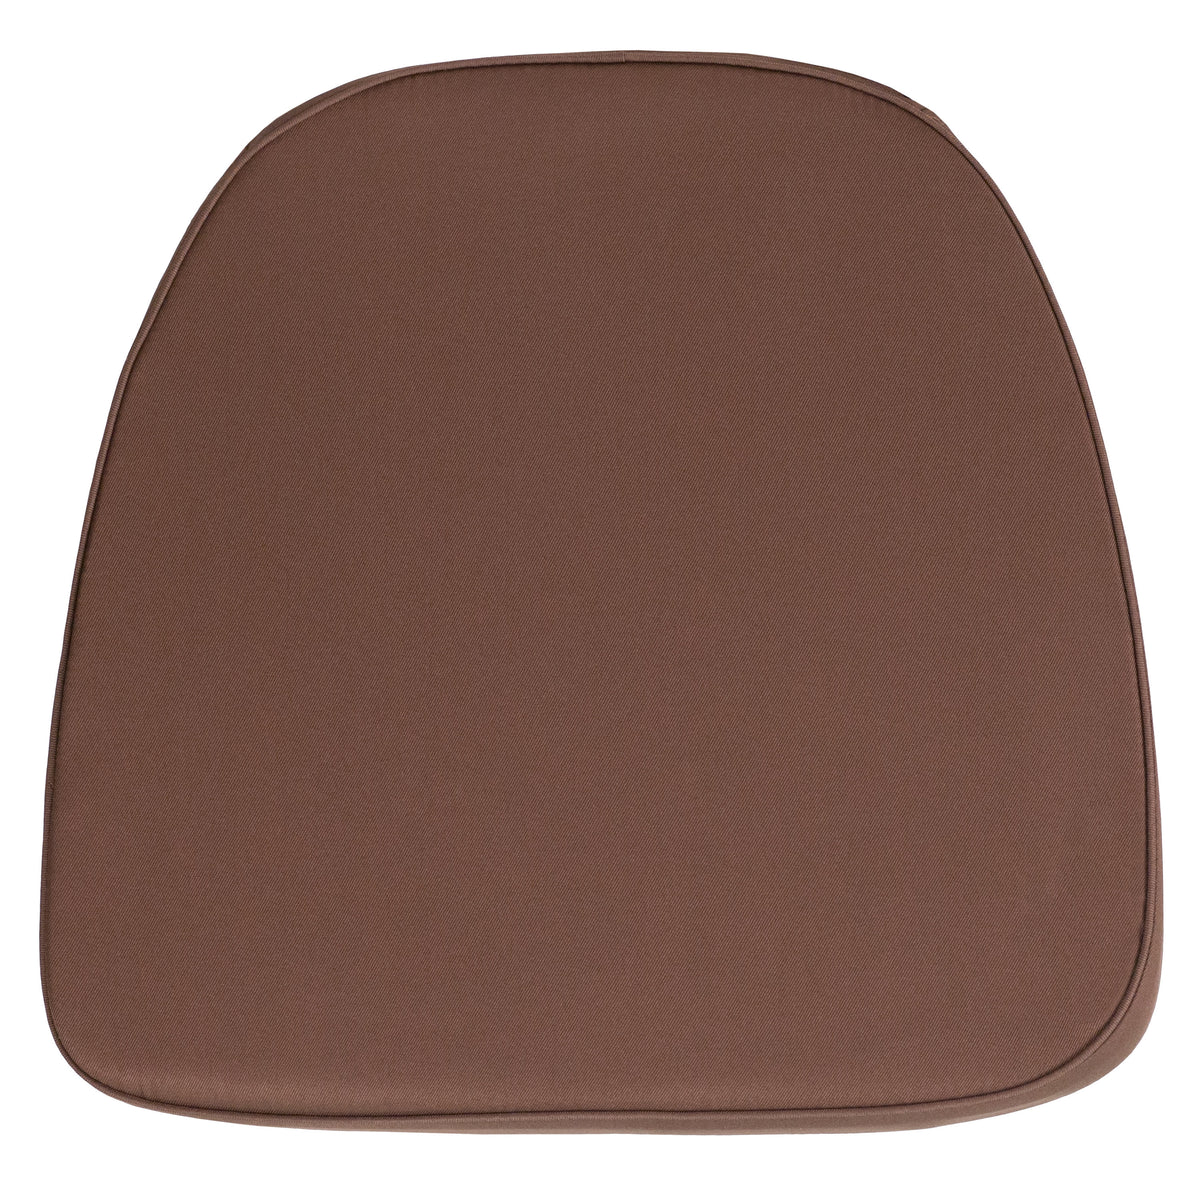 Brown |#| Soft Brown Fabric Chiavari Chair Cushion - Event Accessories - Chair Cushions